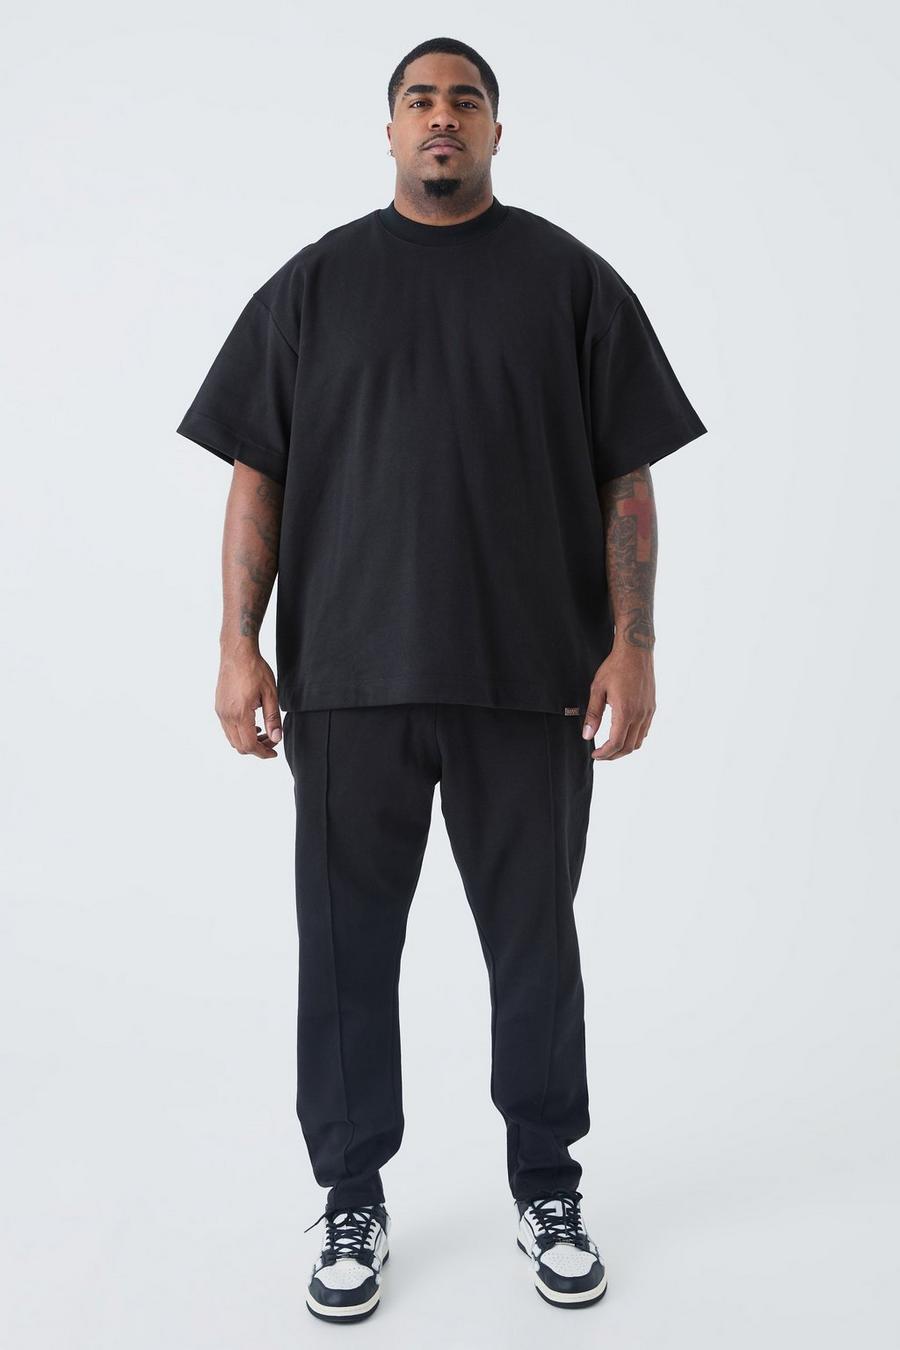 Black Plus Oversized T-shirt & Taper Jogger Interlock Set